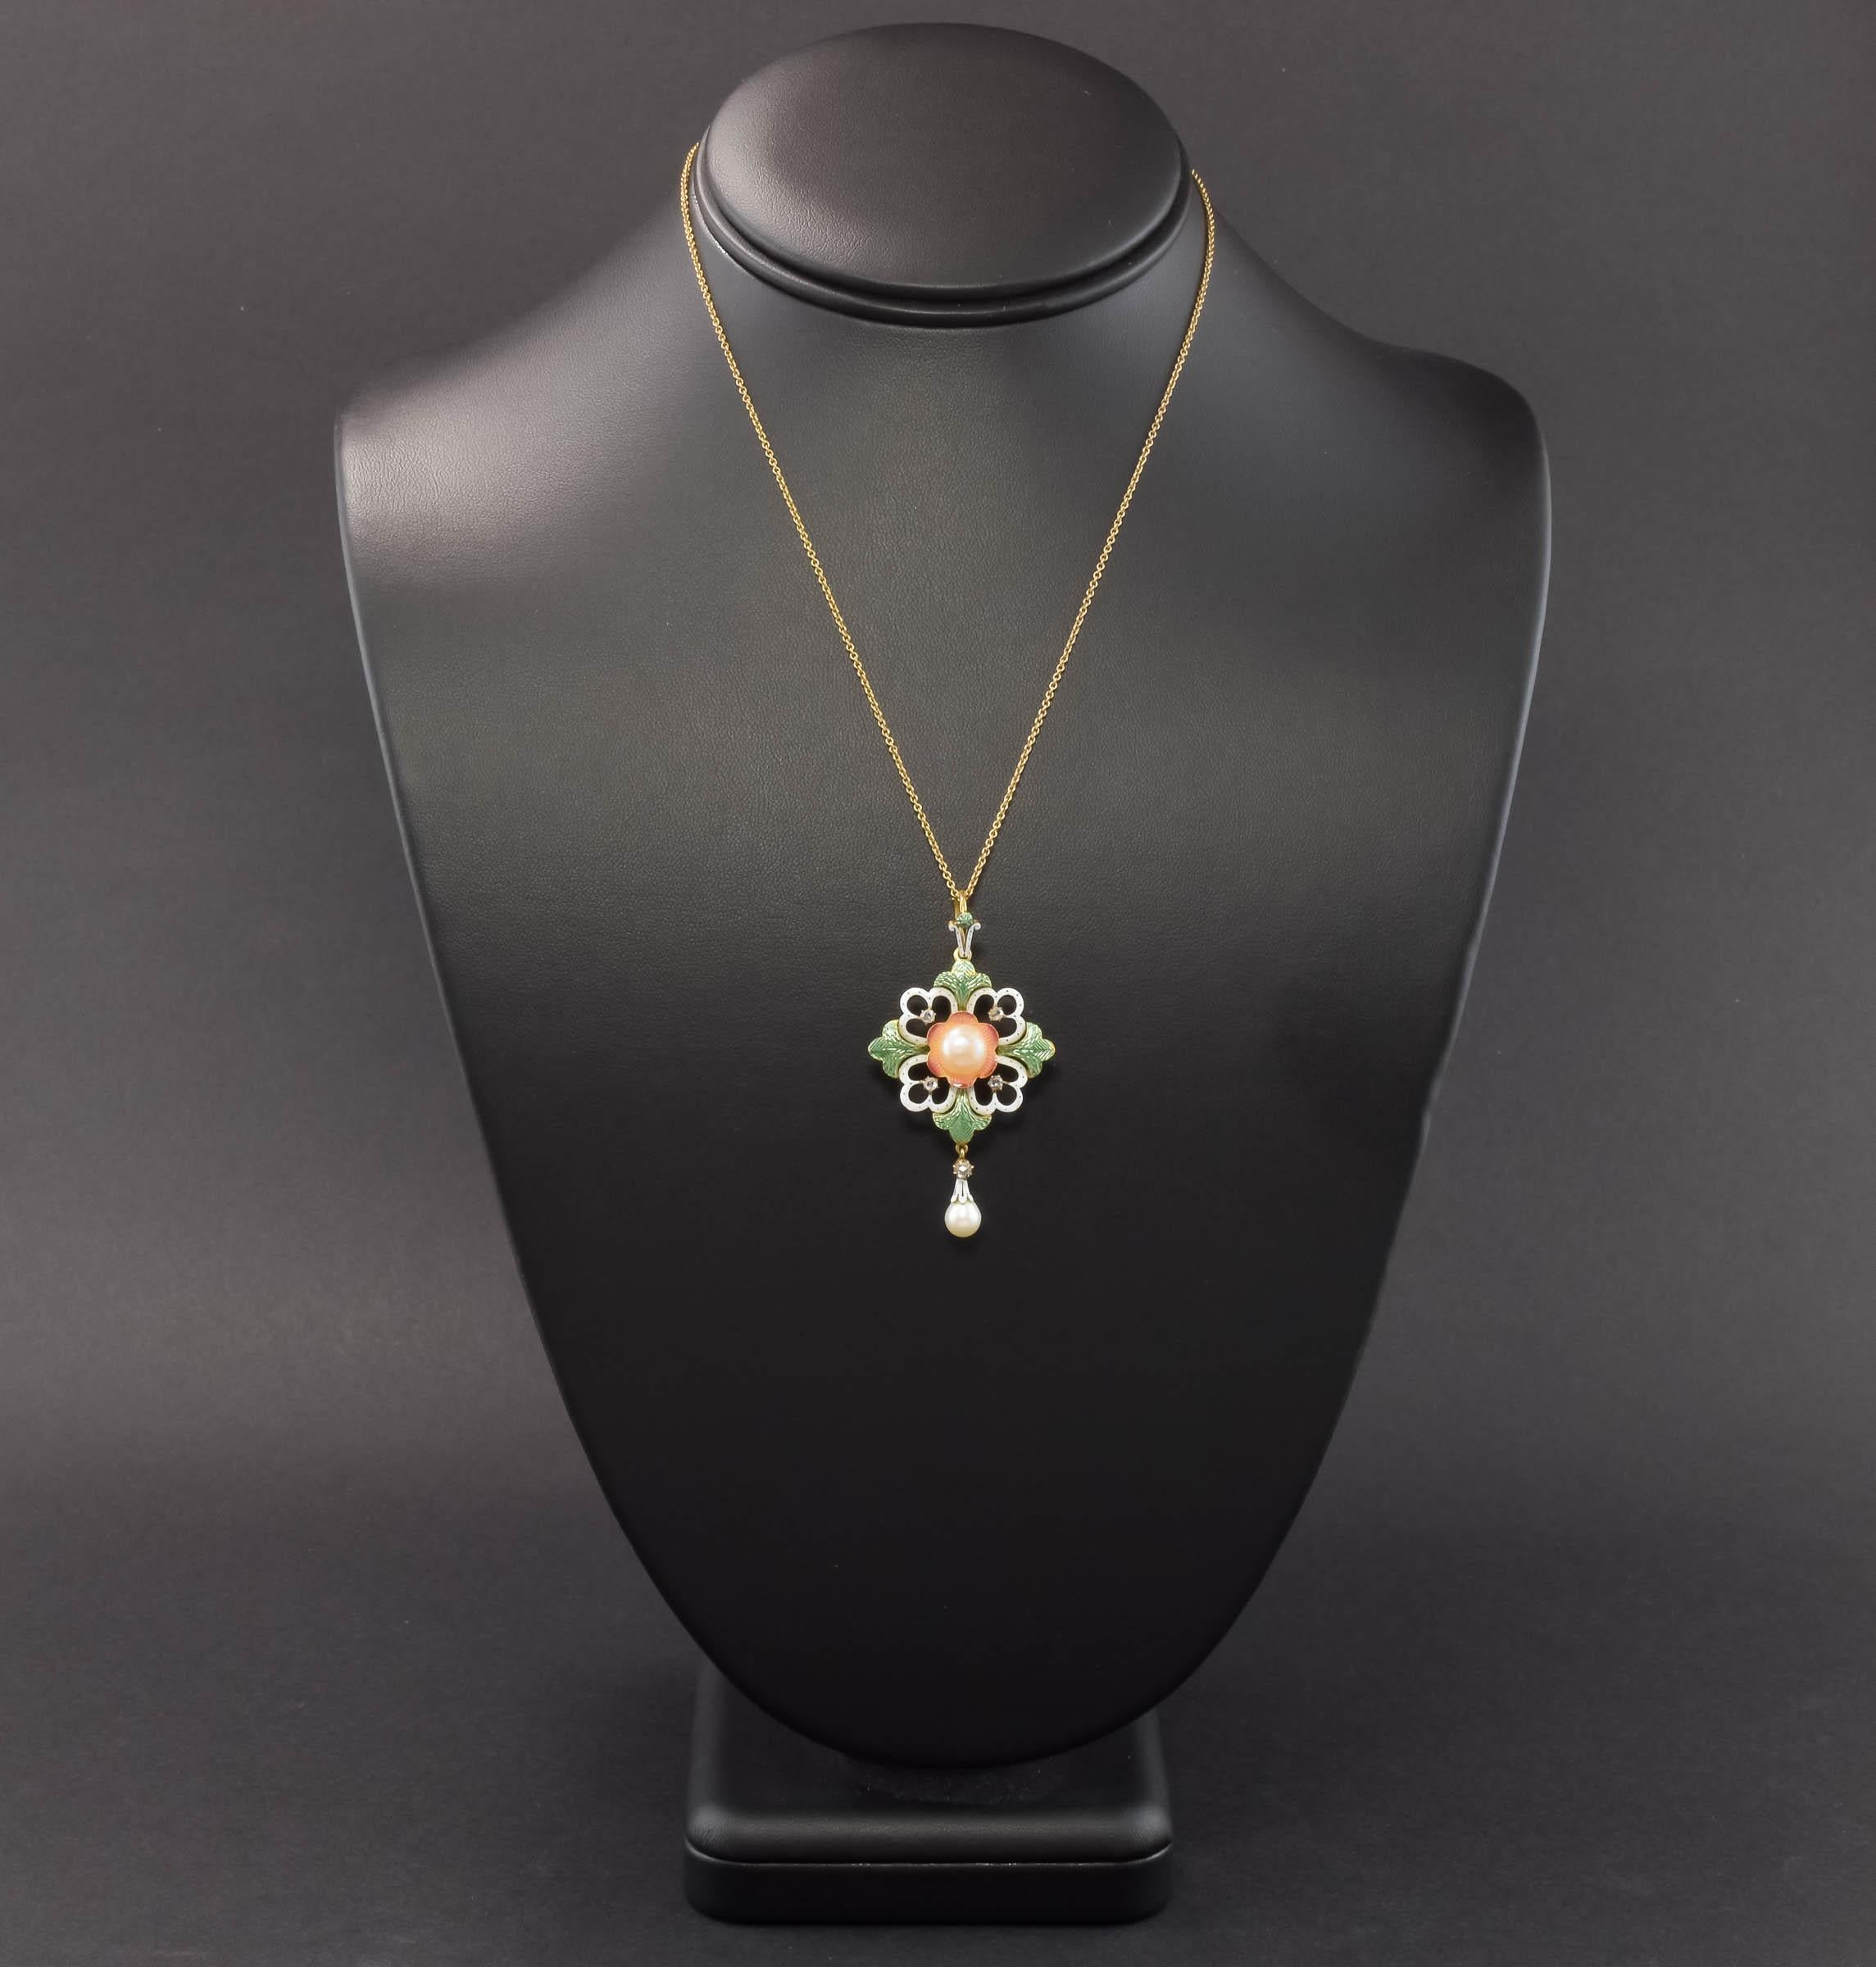 Ce collier est un pendentif - broche en émail d'époque Art Nouveau magnifiquement détaillé.  Sertie de diamants taillés en rose et de perles, cette pièce à motif floral/foliacé offre élégance, finesse d'exécution et polyvalence.  (le fermoir